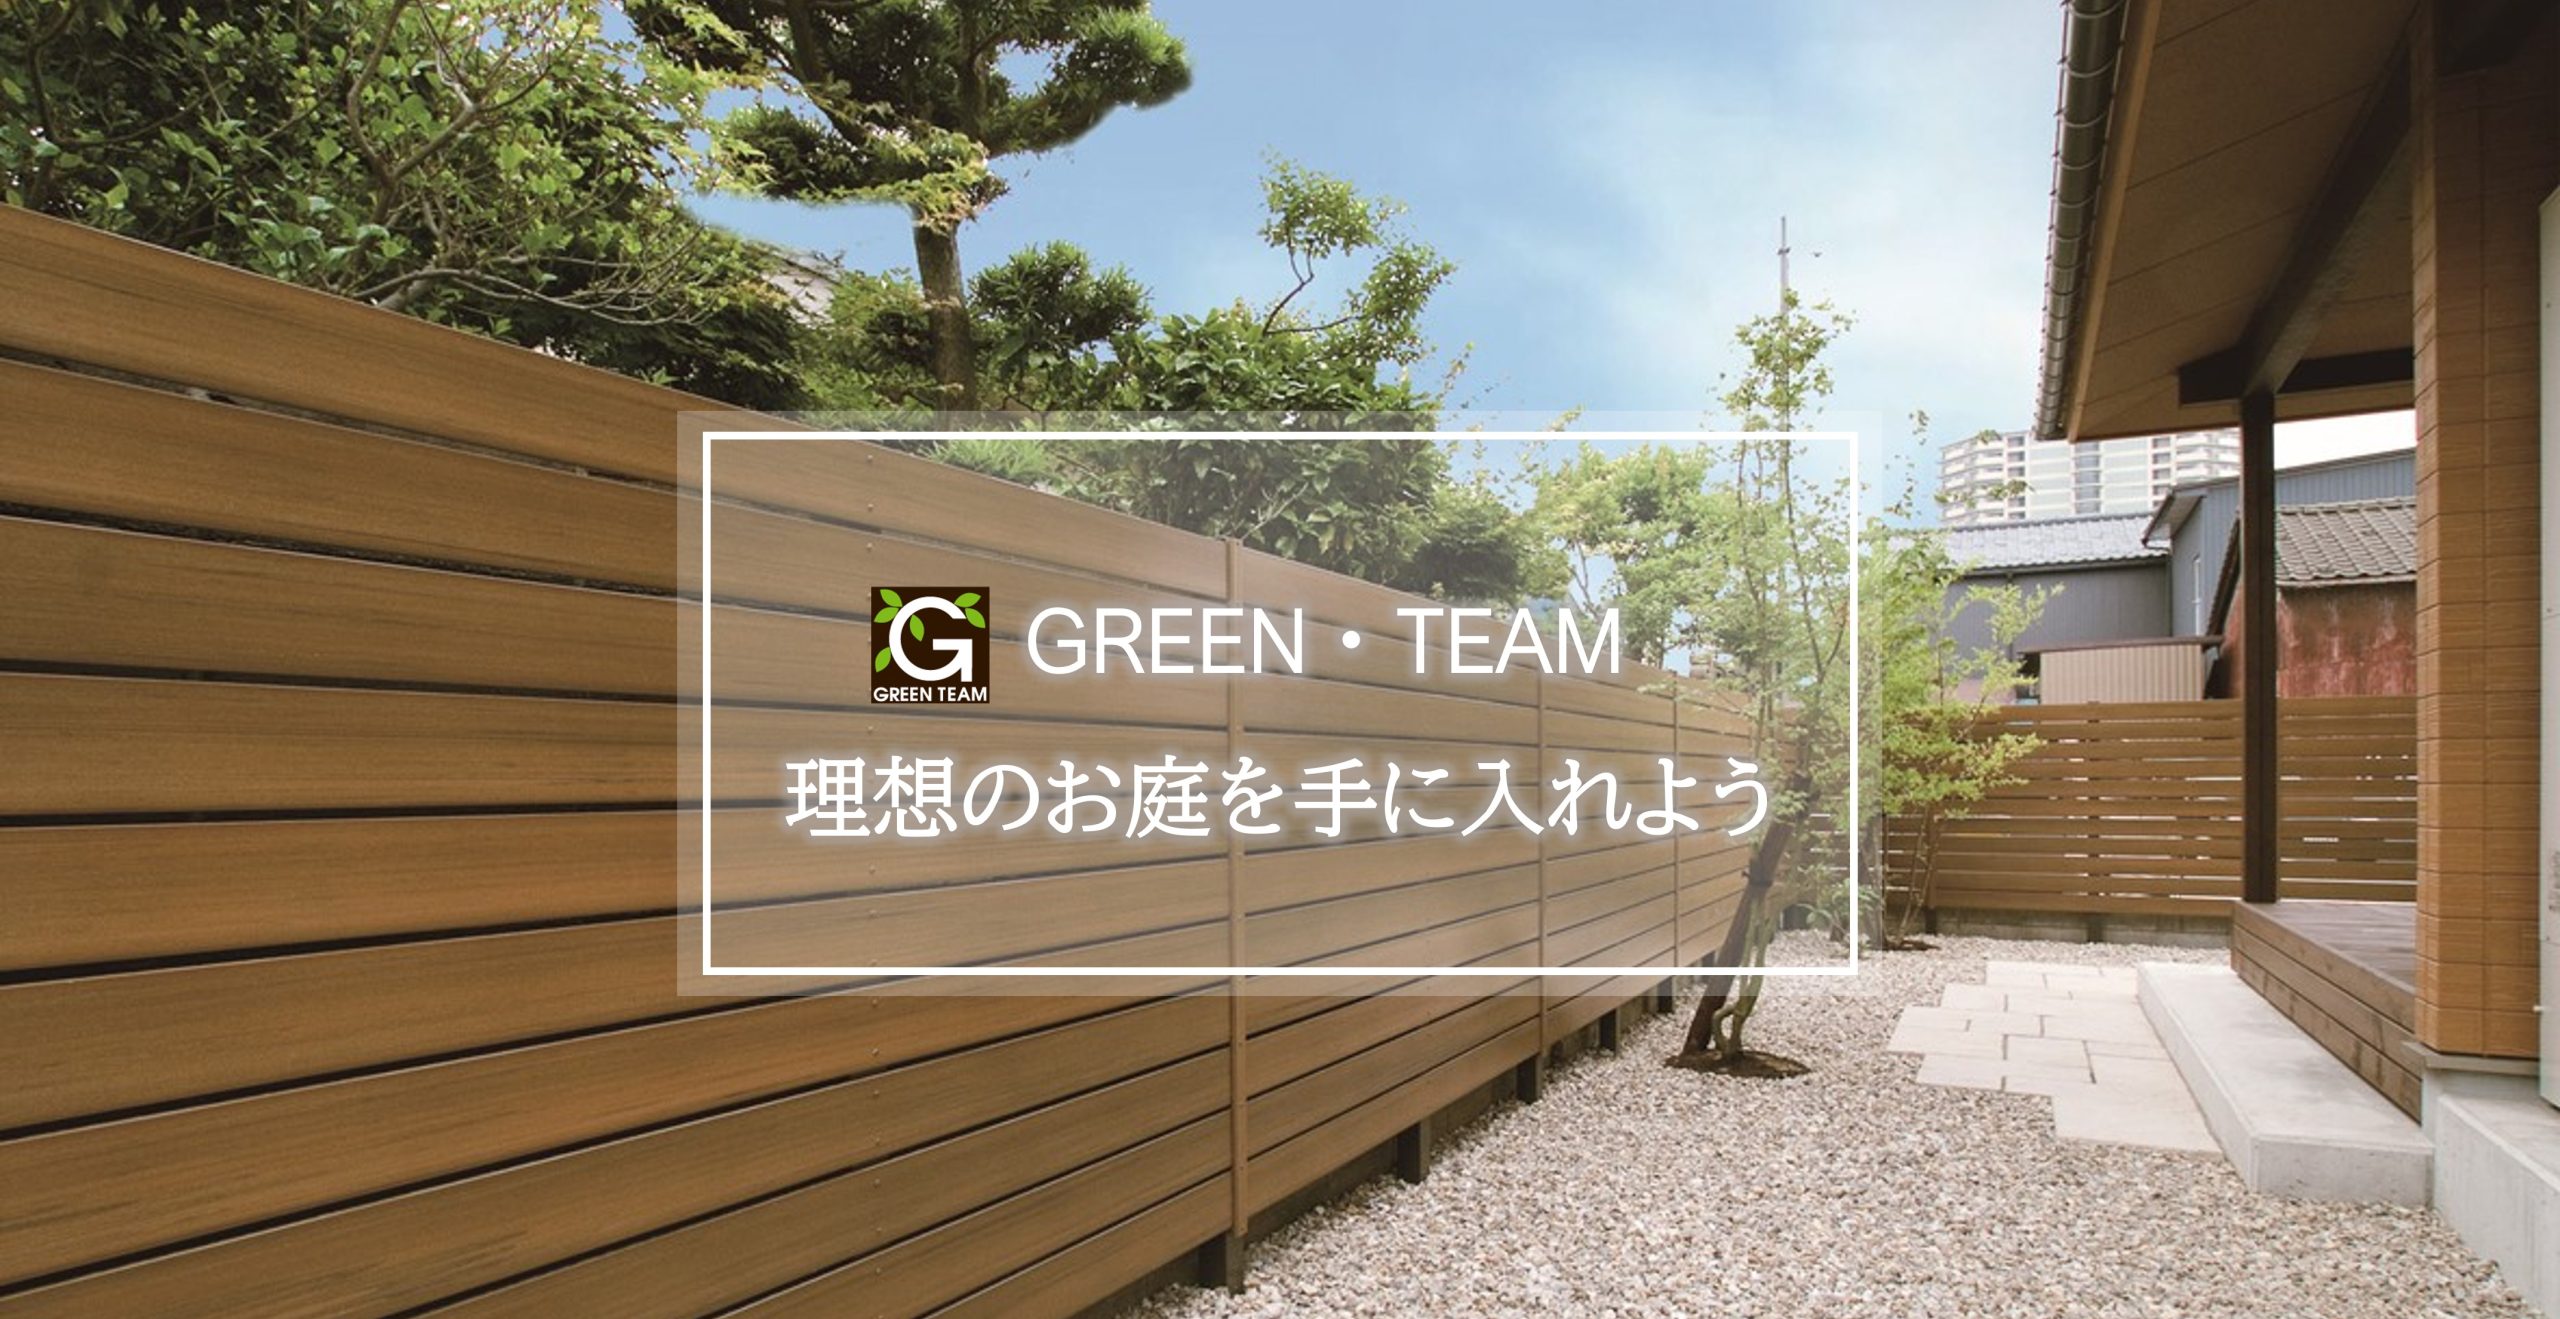 GREEN・TEAMエクステリアリフォームぺージのタイトル画像(目隠しフェンス)